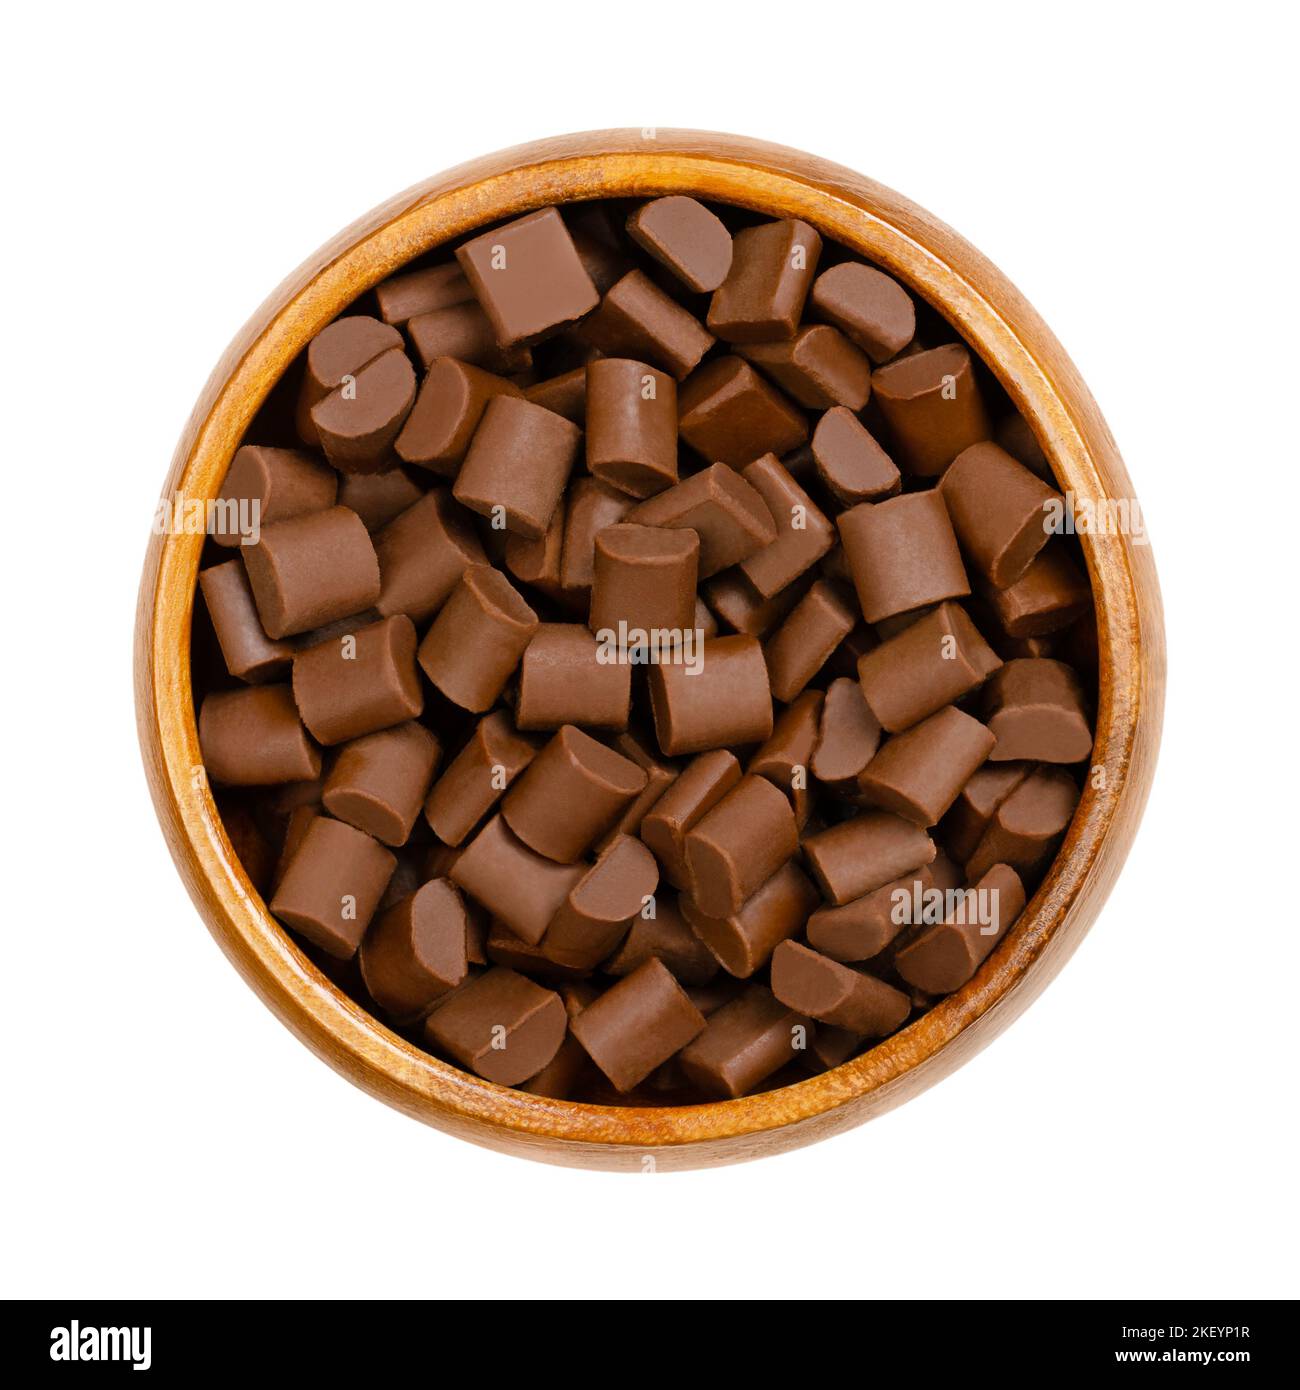 Schokoladenstückchen in einer Holzschale. Chips und kleine Häppchen aus Milchschokolade, die als Zutat in einer Reihe von süßen Desserts verwendet werden. Stockfoto